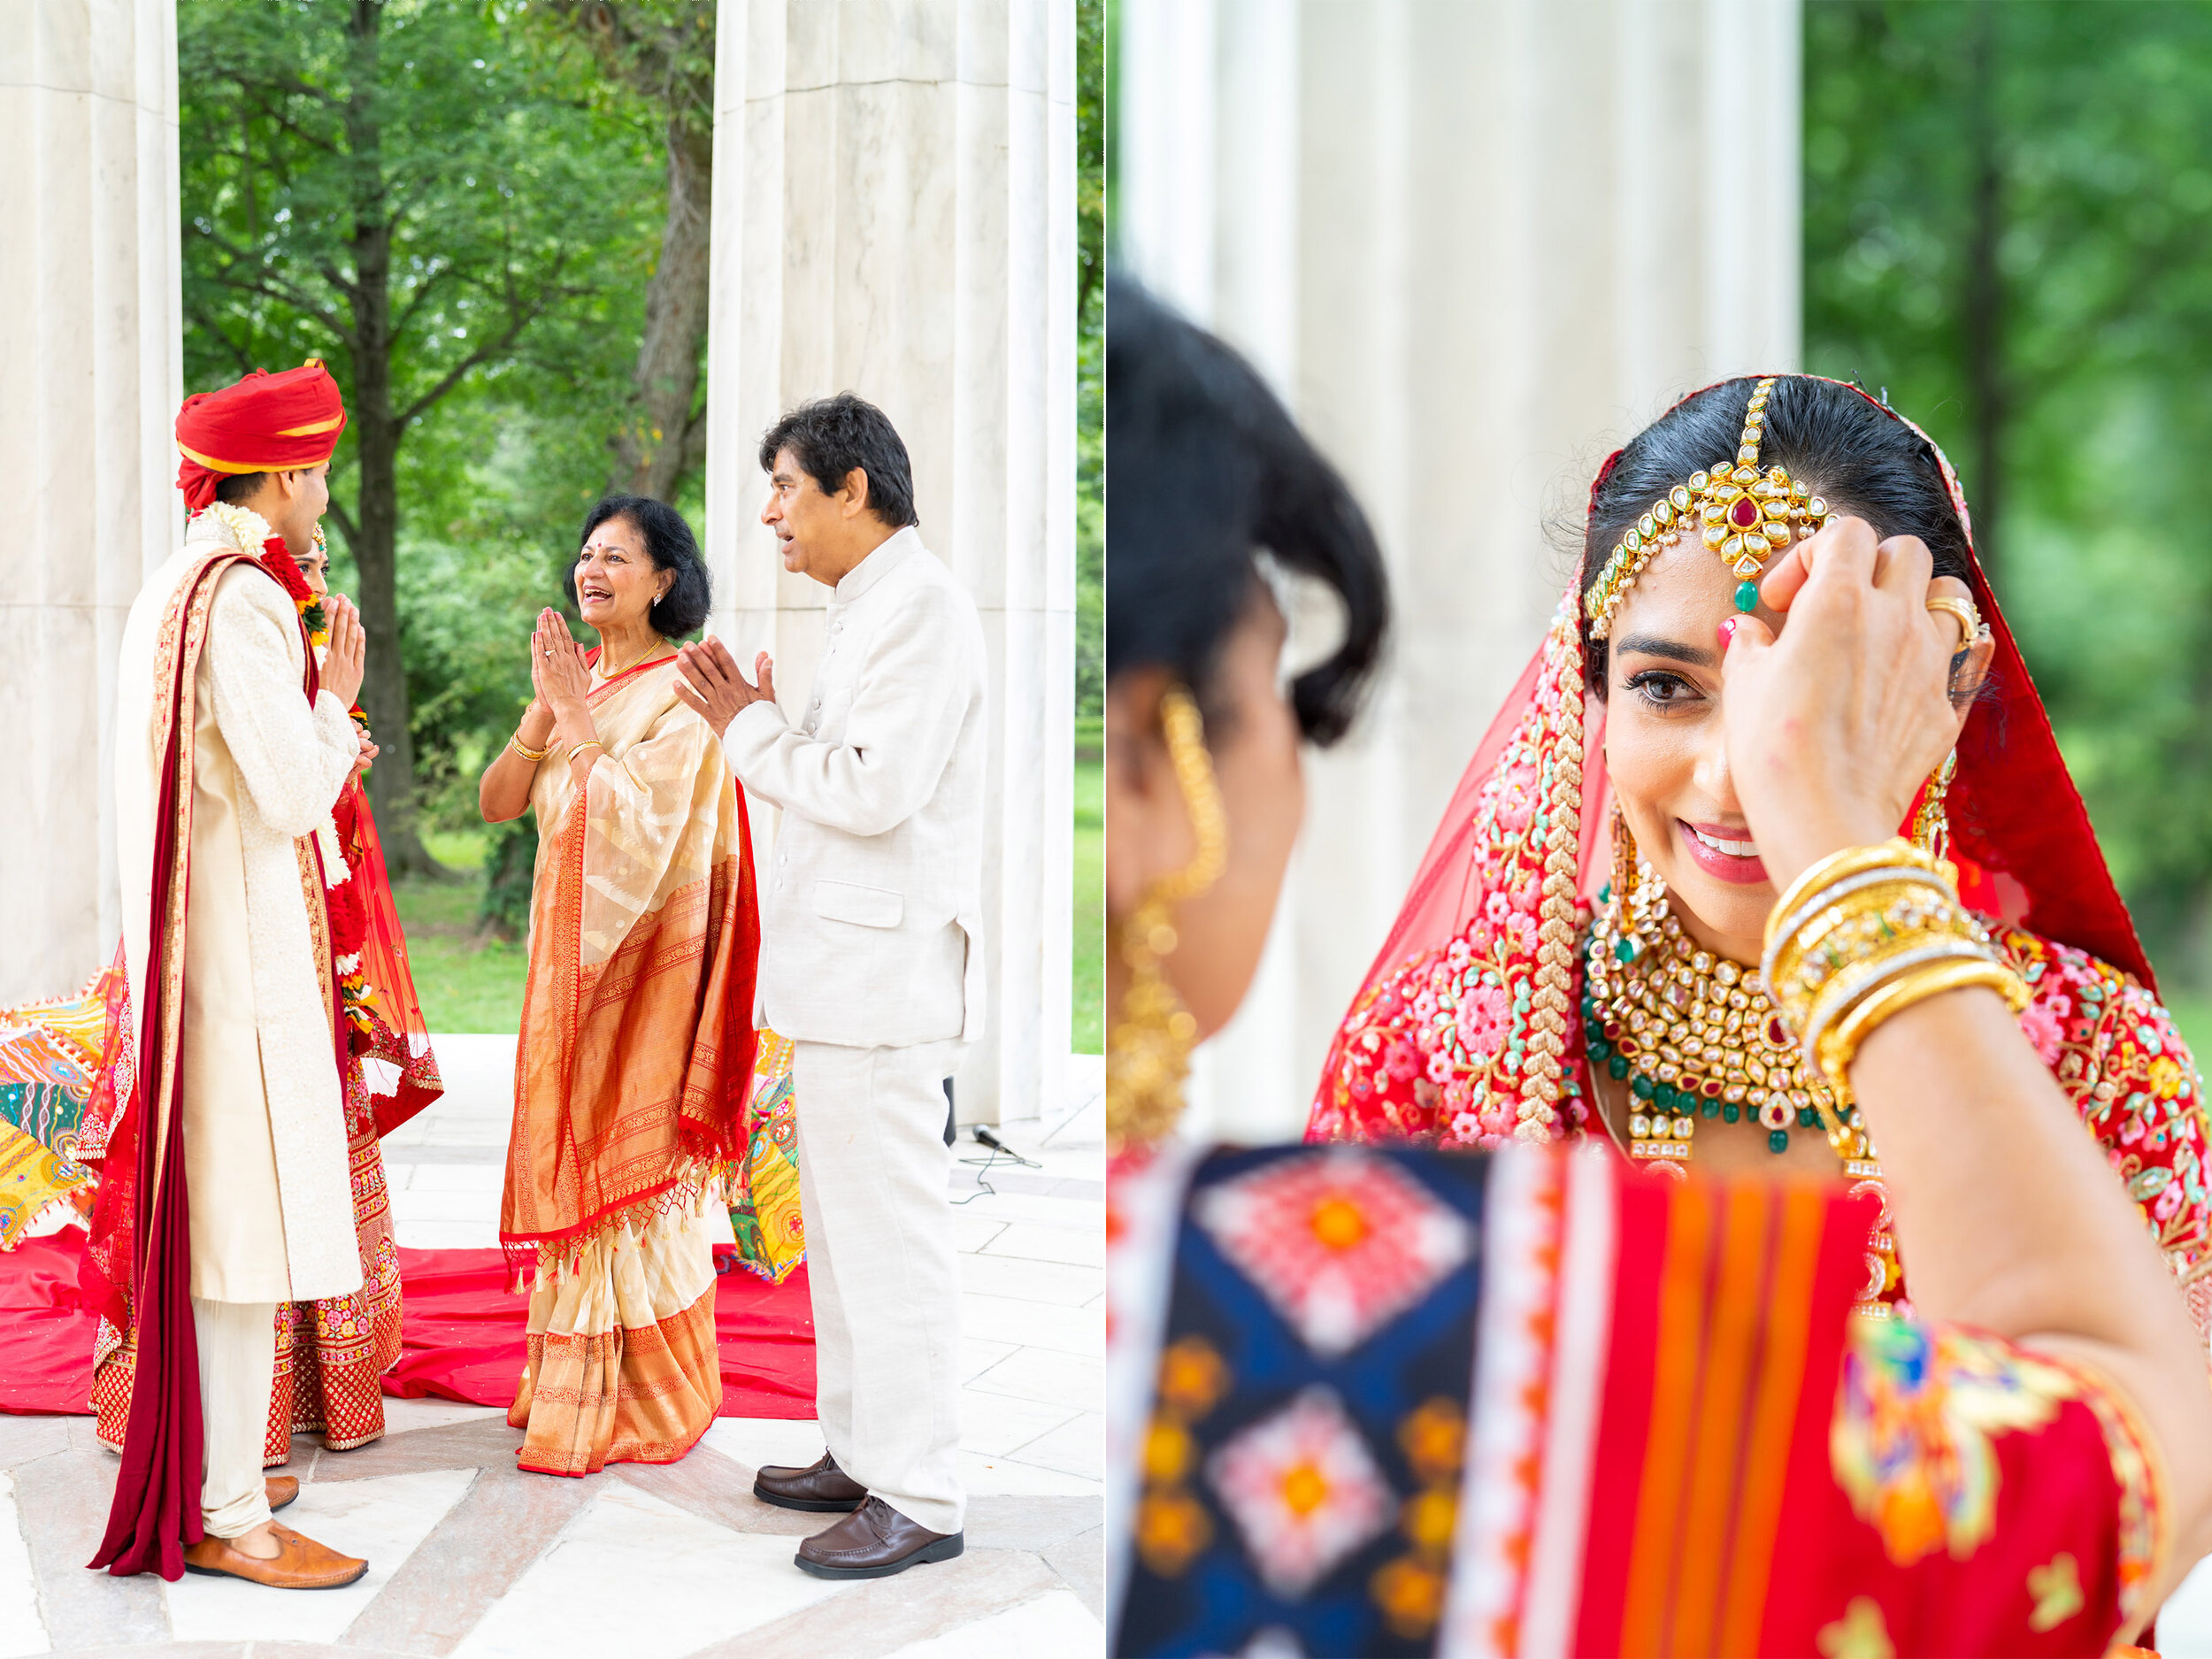 Fun micro Hindu wedding in Washington DC